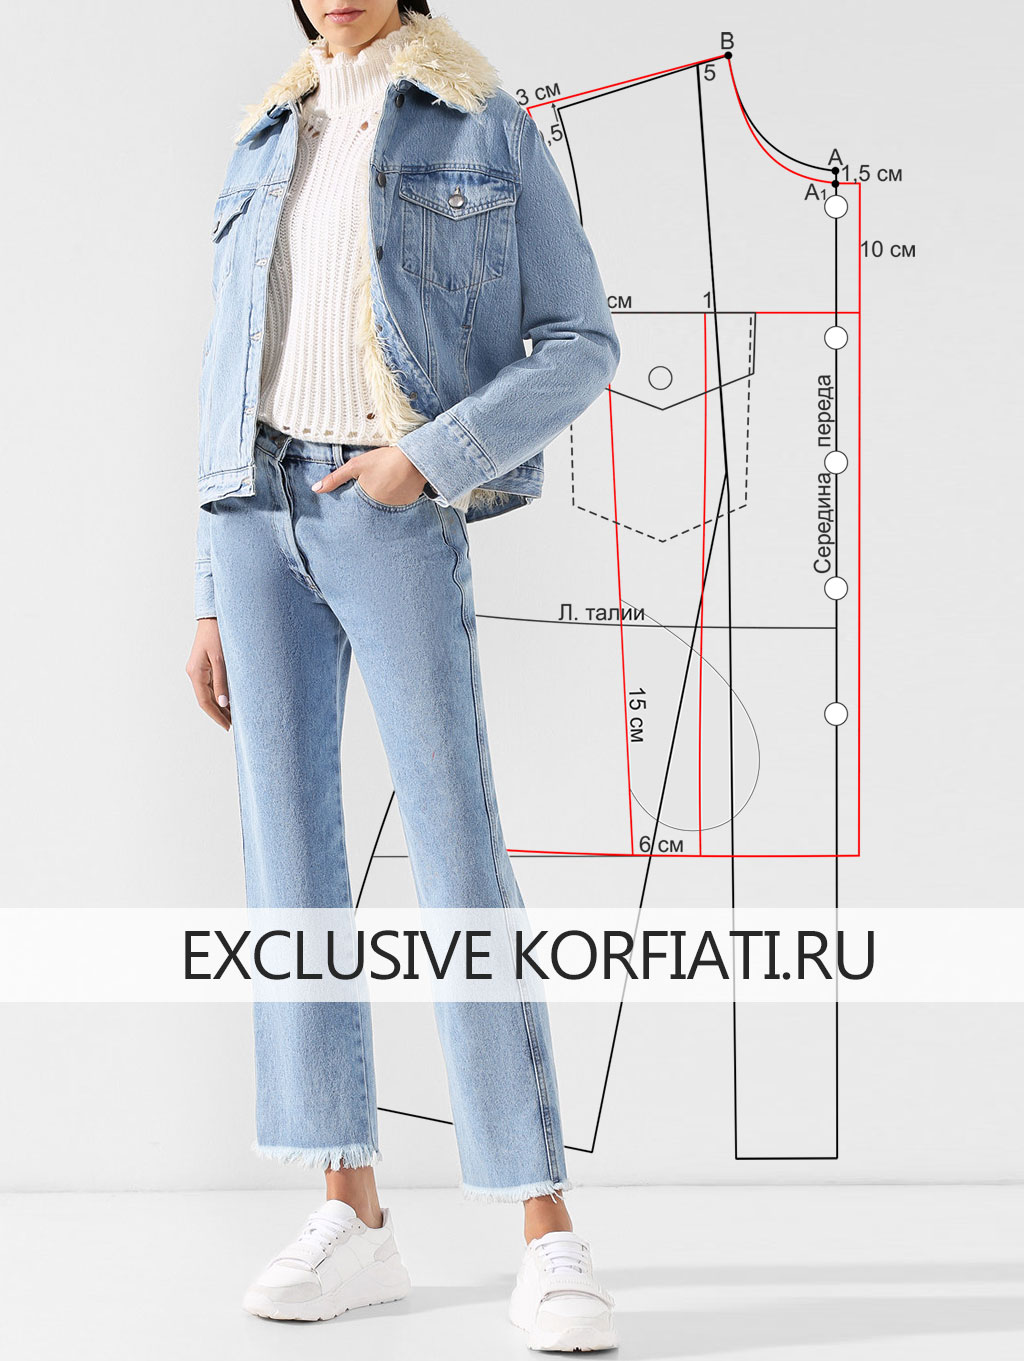 Women jeans template: изображения без лицензионных платежей